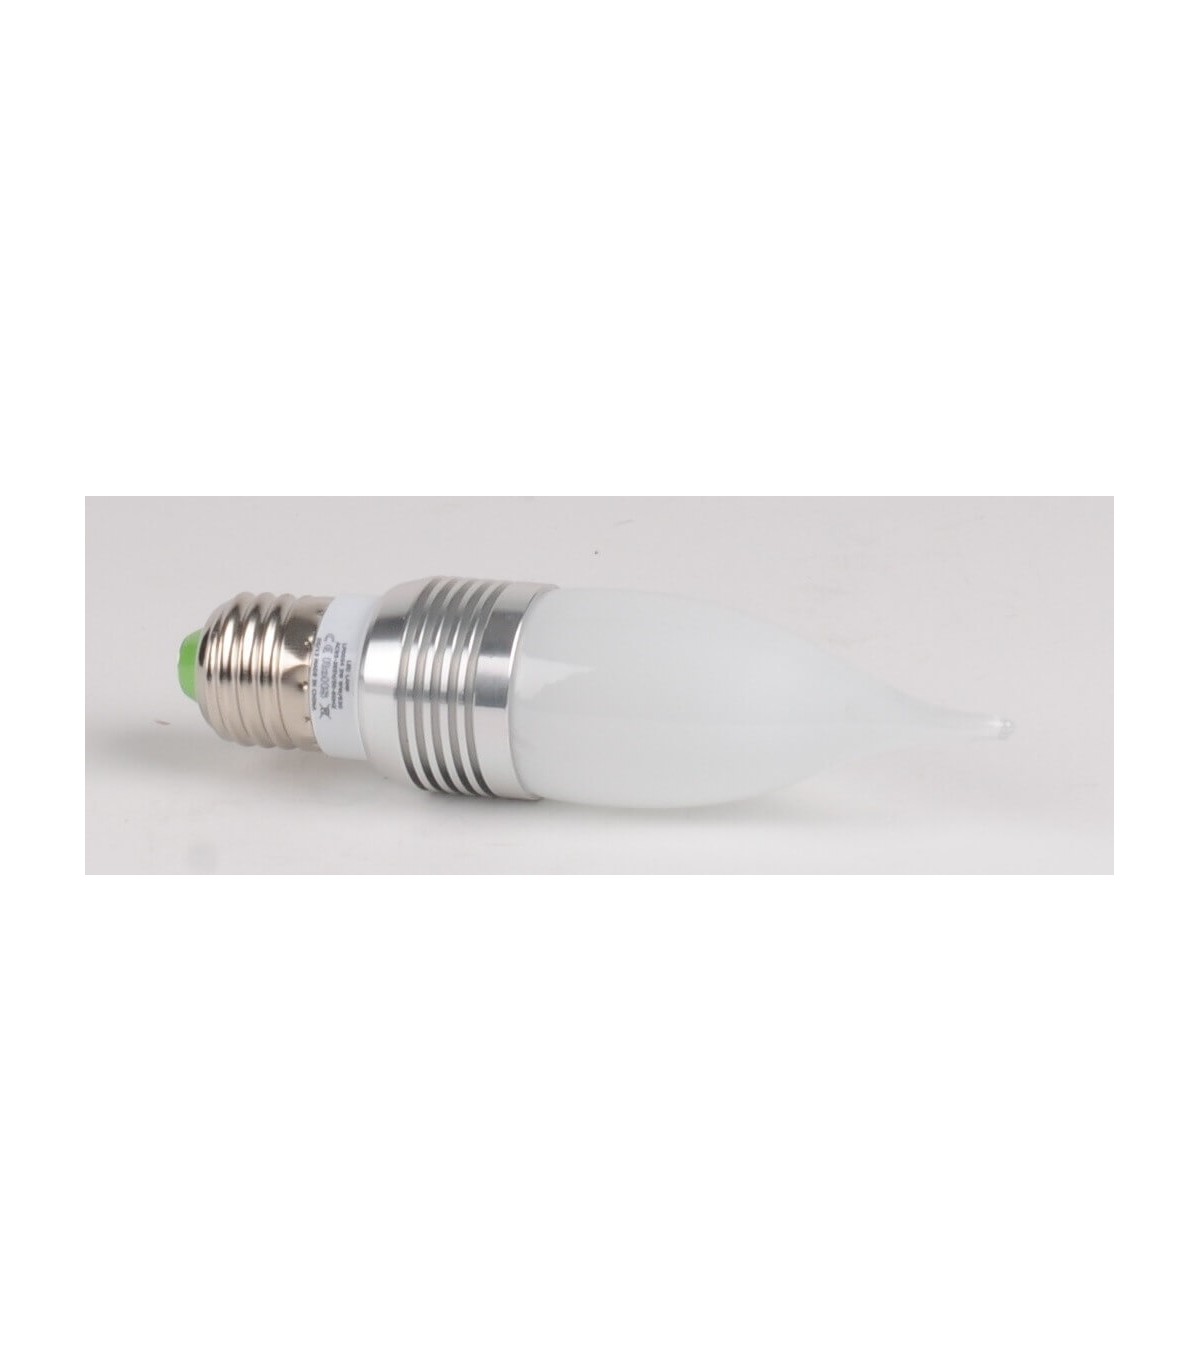 Ampoule LED spot avec culot standard GU10, conso. de 3W